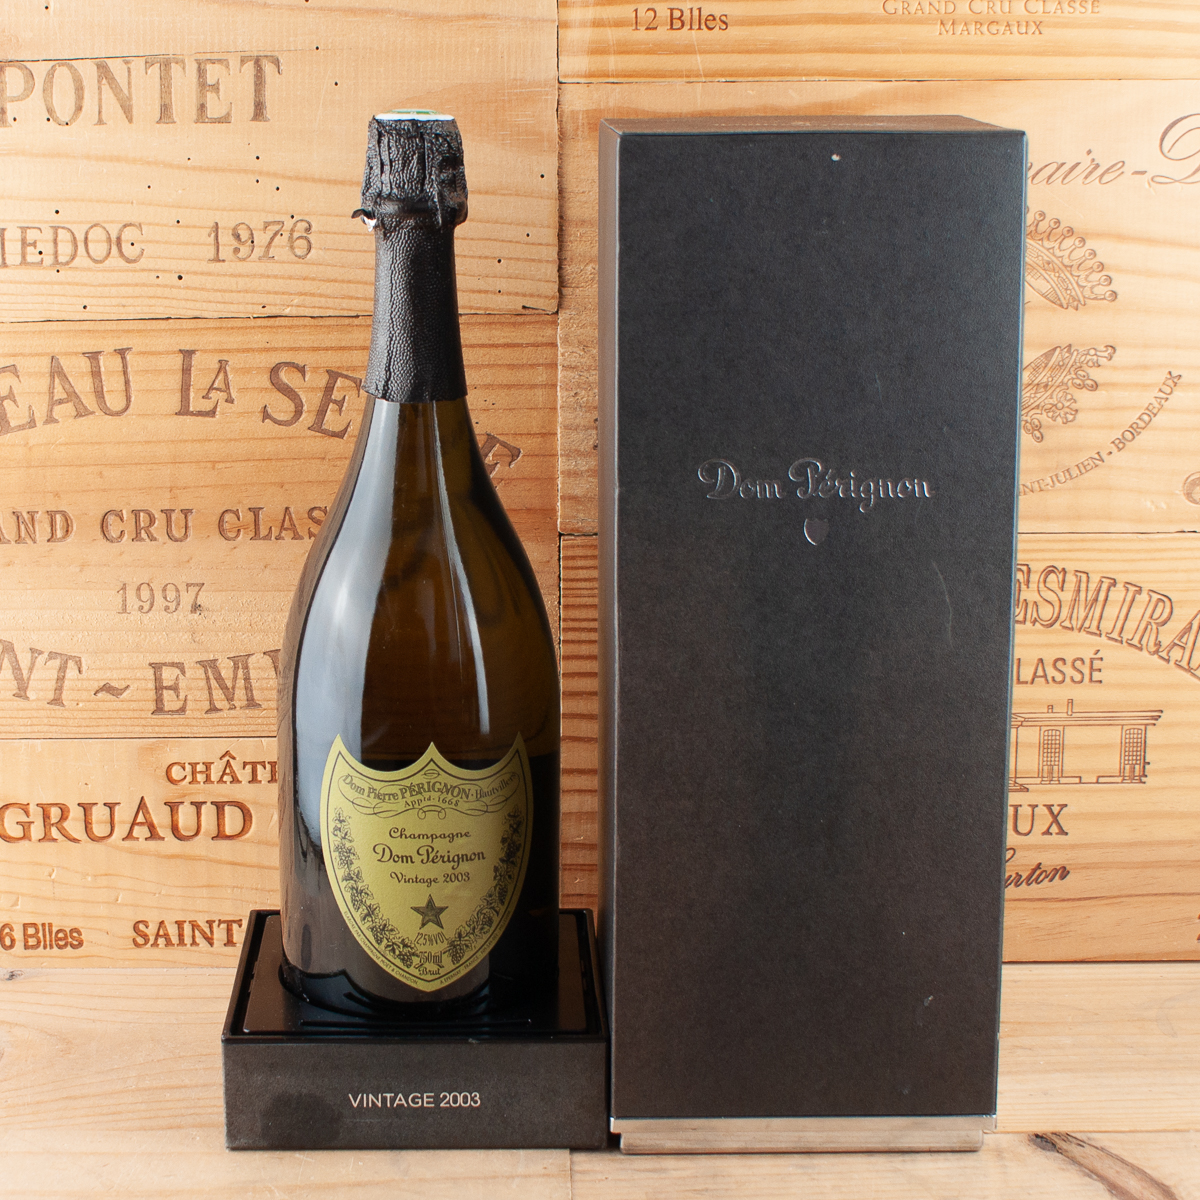 2003 Champagne Dom Perignon Vintage